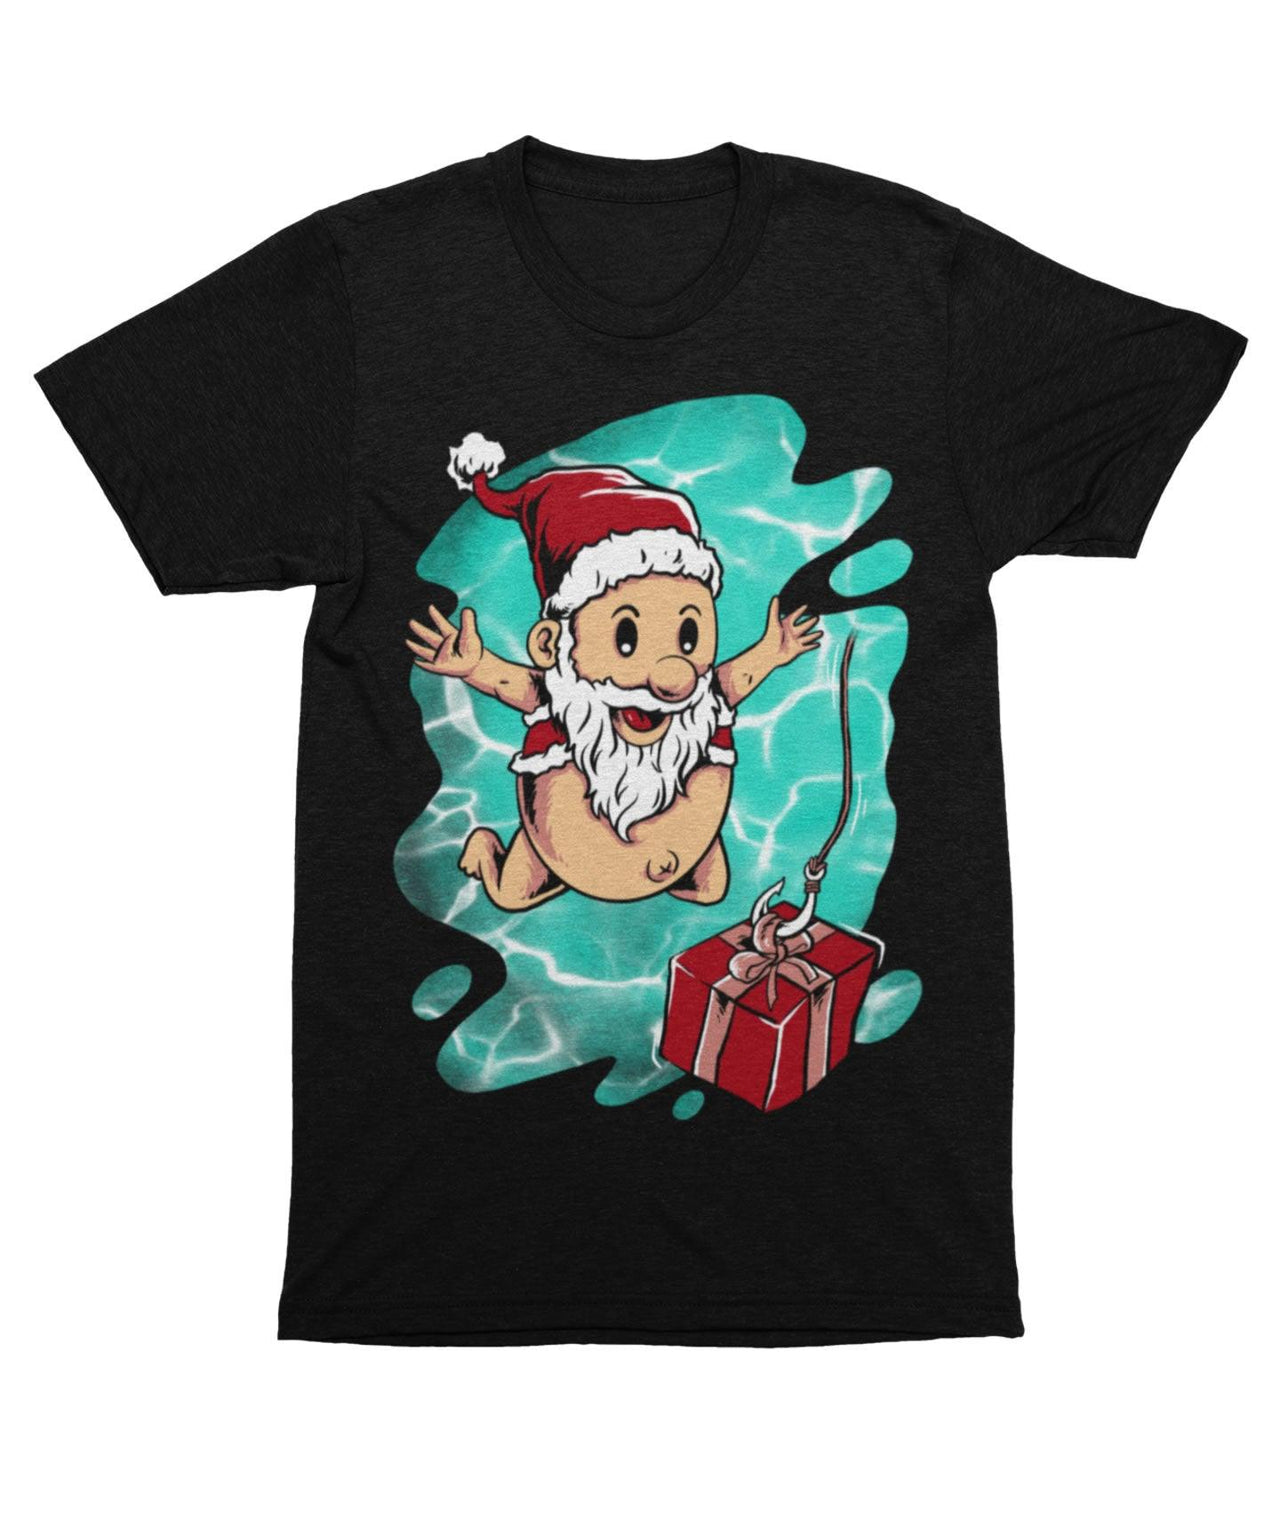 Deep Surprise For Baby Santa, Unisex Christmas T-Shirt For Men 8Ball